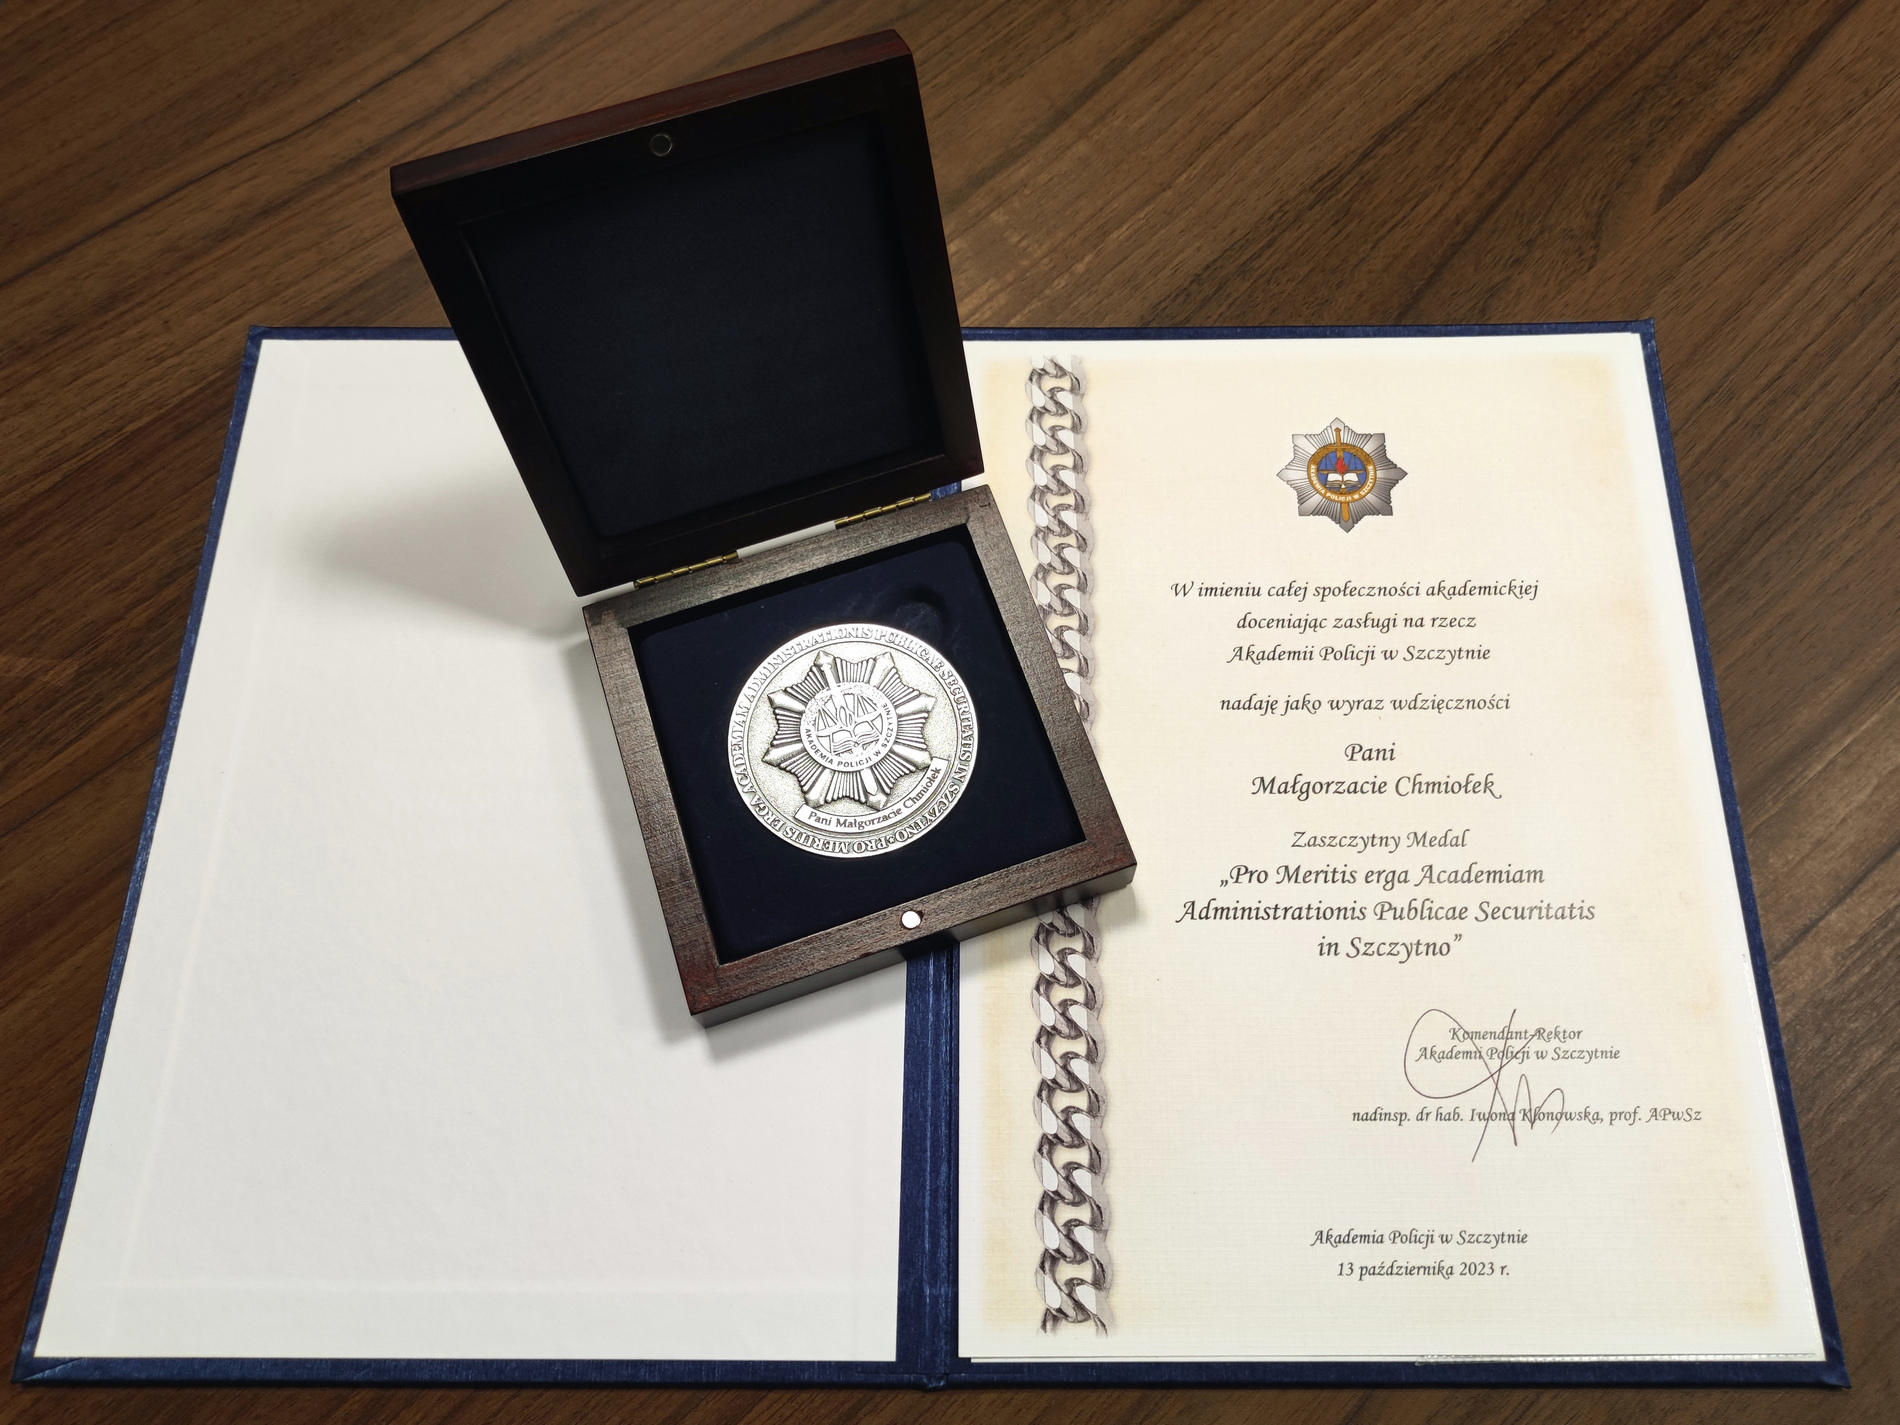 Medal "Pro Meritis erga Academiam Administrationis Publicae Securitatis in Szczytno"